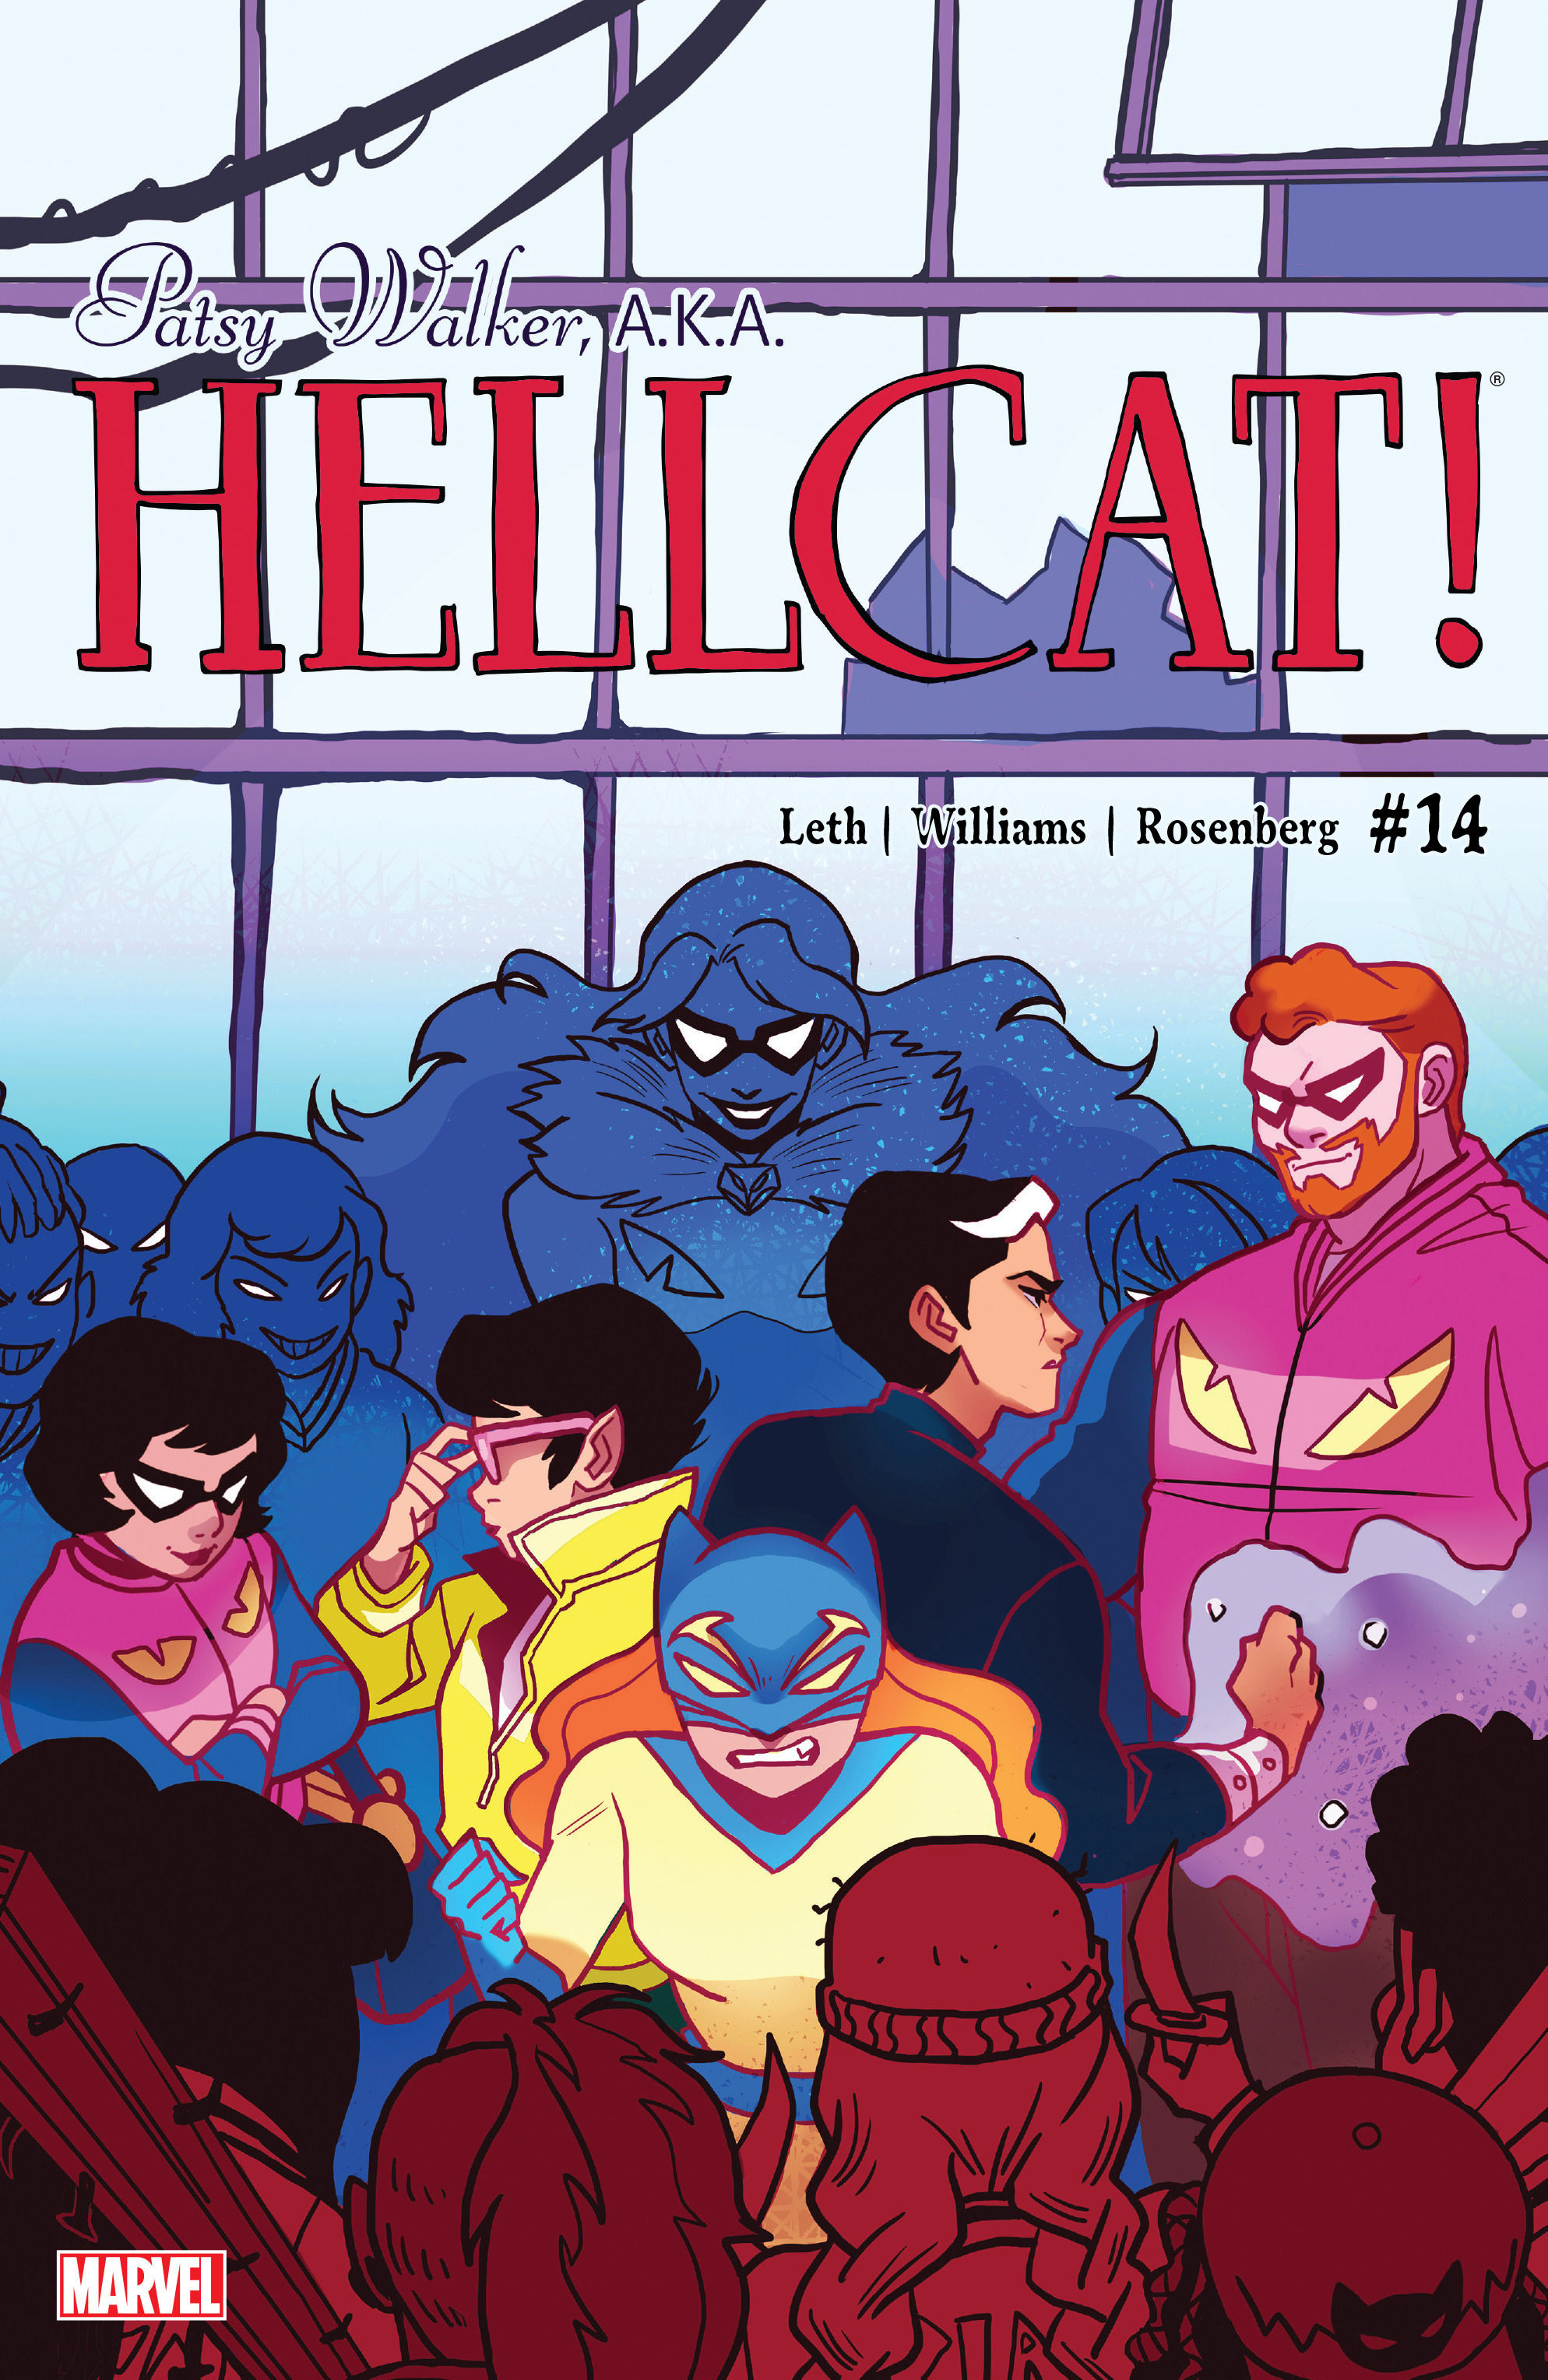 Read online Patsy Walker, A.K.A. Hellcat! comic -  Issue #14 - 1